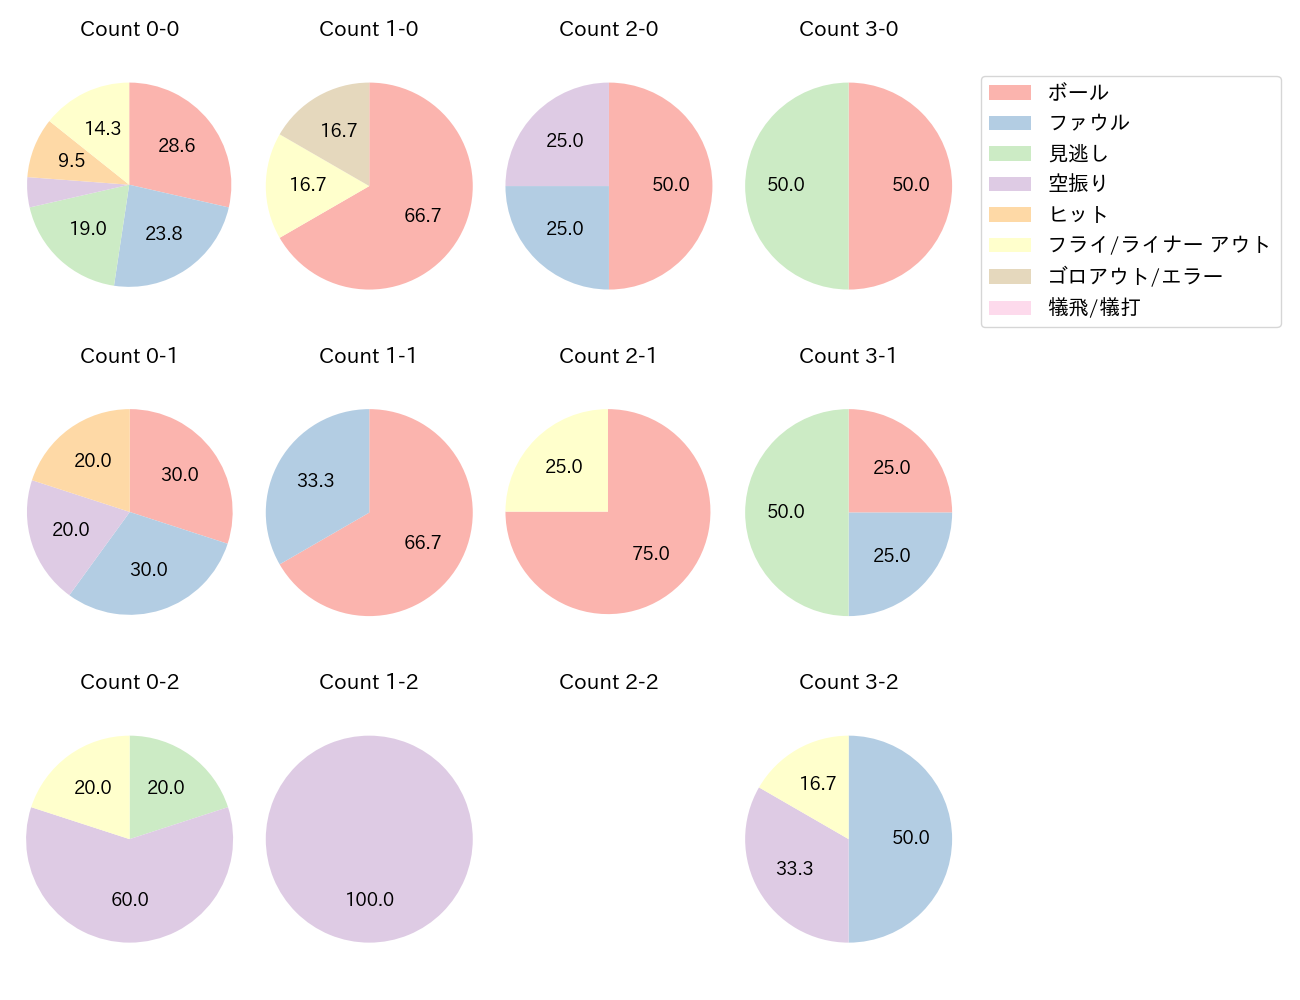 小幡 竜平の球数分布(2021年5月)